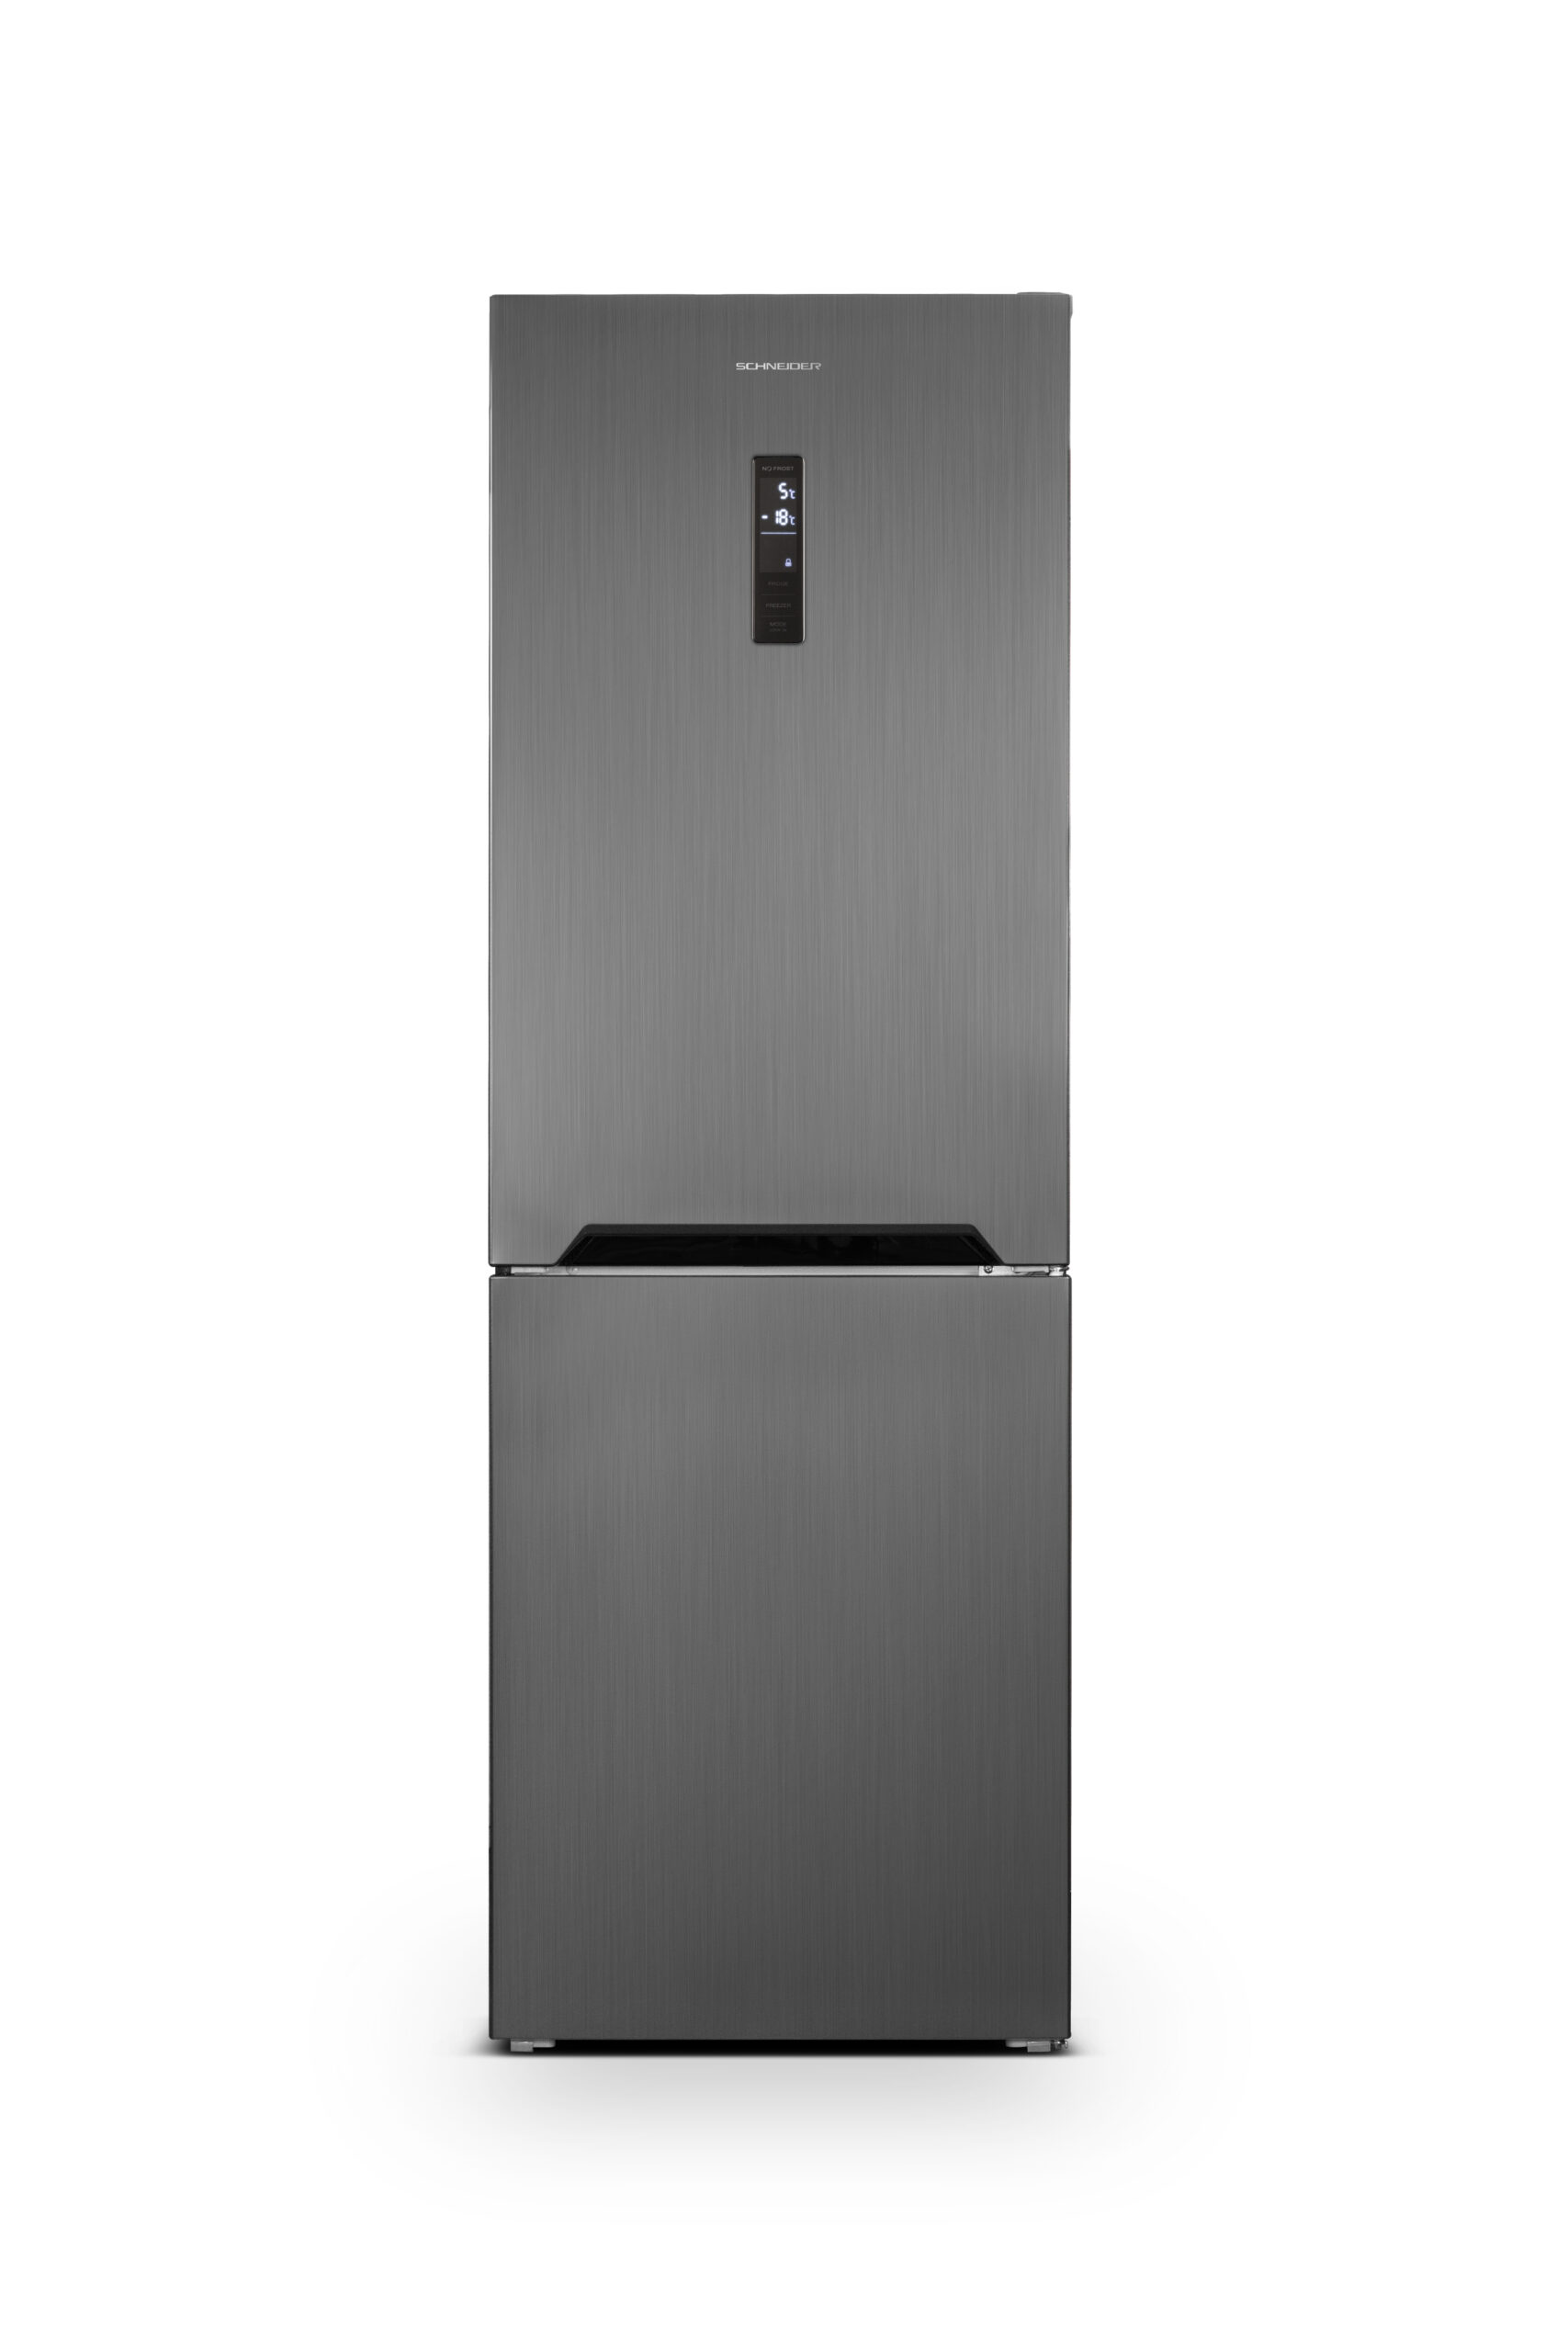 Combinaison réfrigérateur-congélateur - Total No Frost - 347 L - Dark Inox